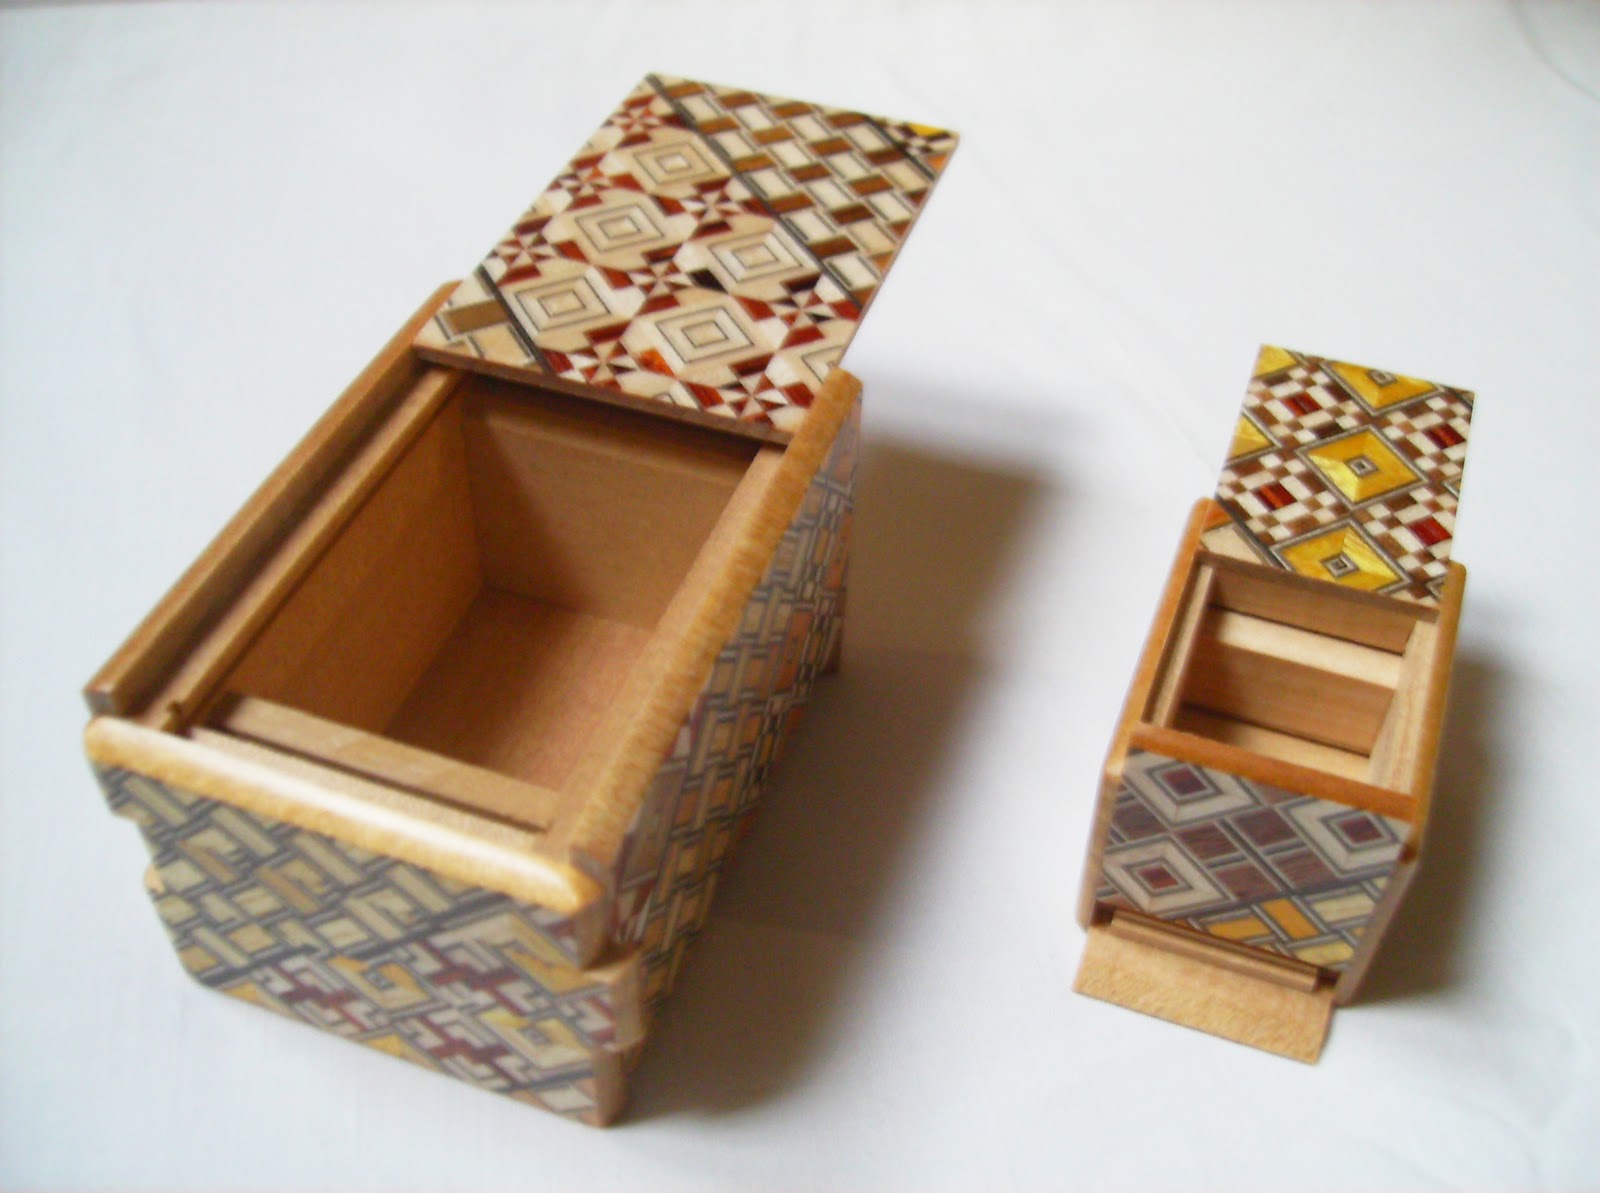 Gabriel Fernandes' Puzzle Collection: Japanese Puzzle Box(es)